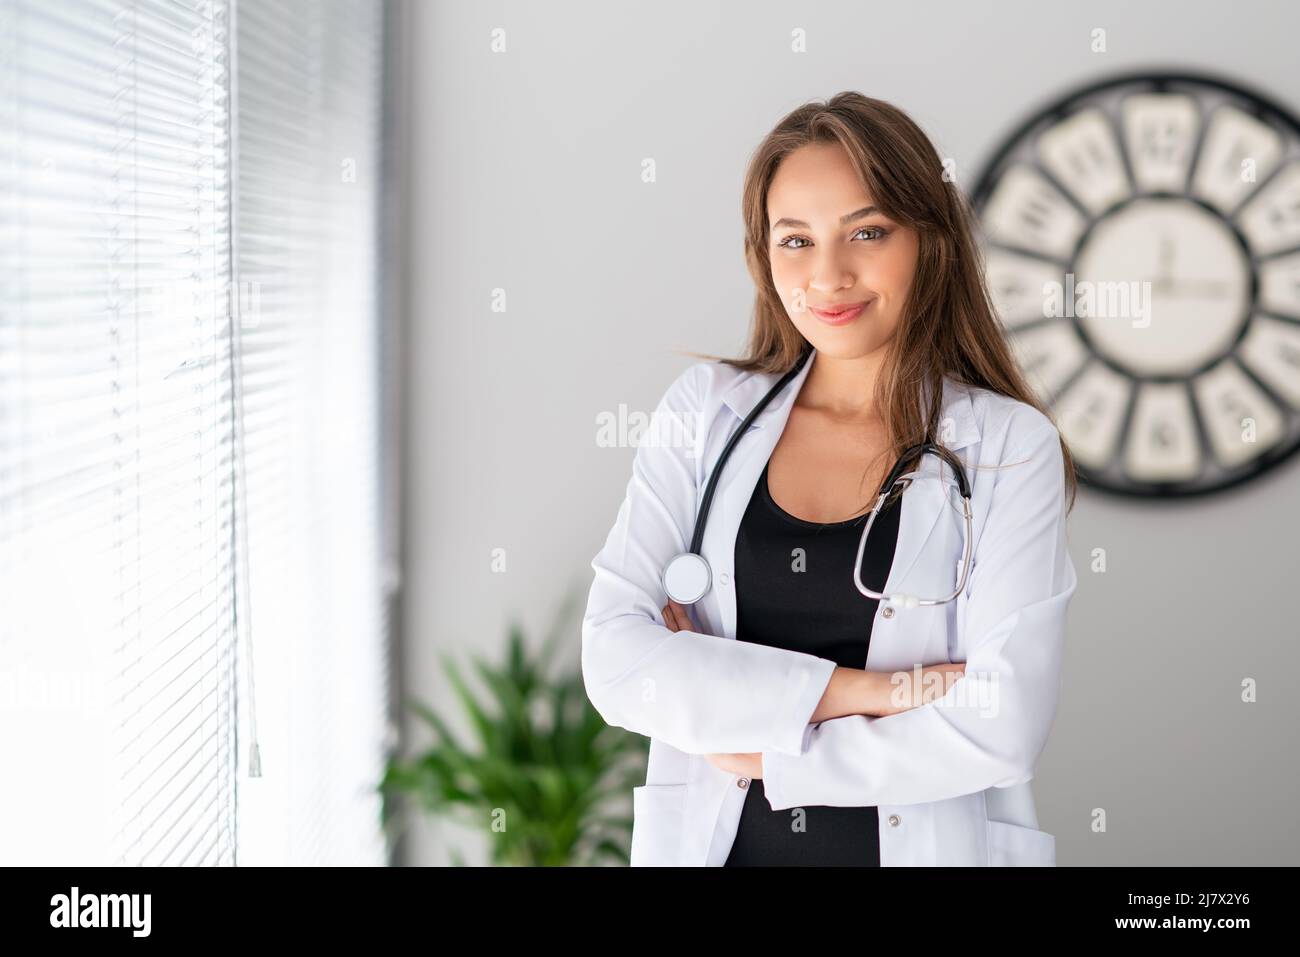 Un medico femminile attraente sta osservando con, fiducia e sorriso grazioso. Foto di alta qualità Foto Stock